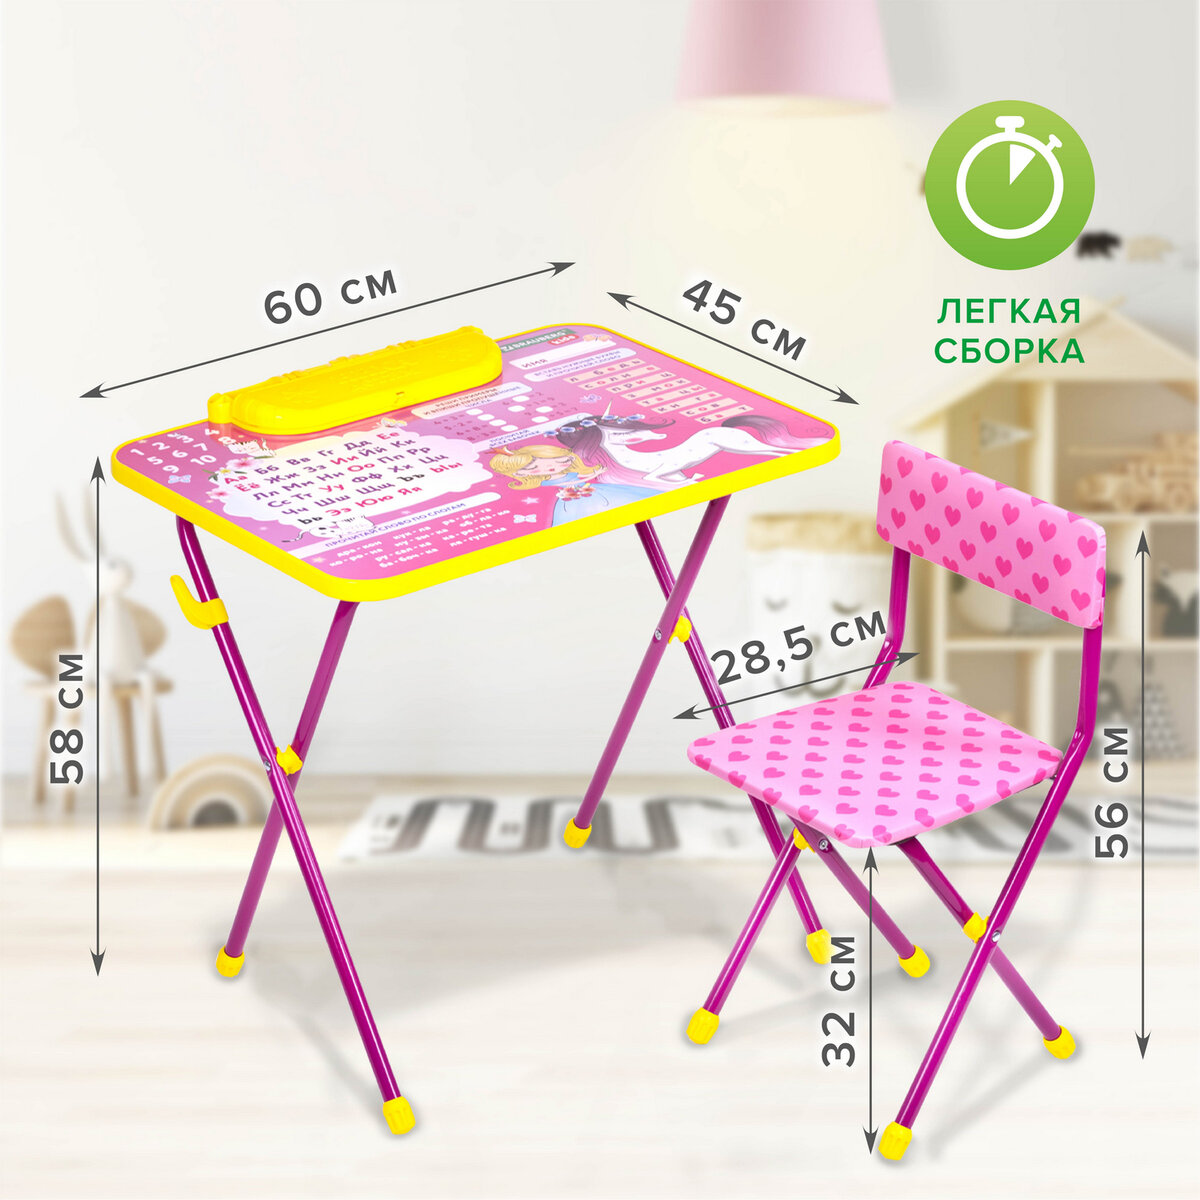 Столик и стульчик детский Brauberg игровой набор для развивающих игр для девочки розовый Принцесса - фото 9